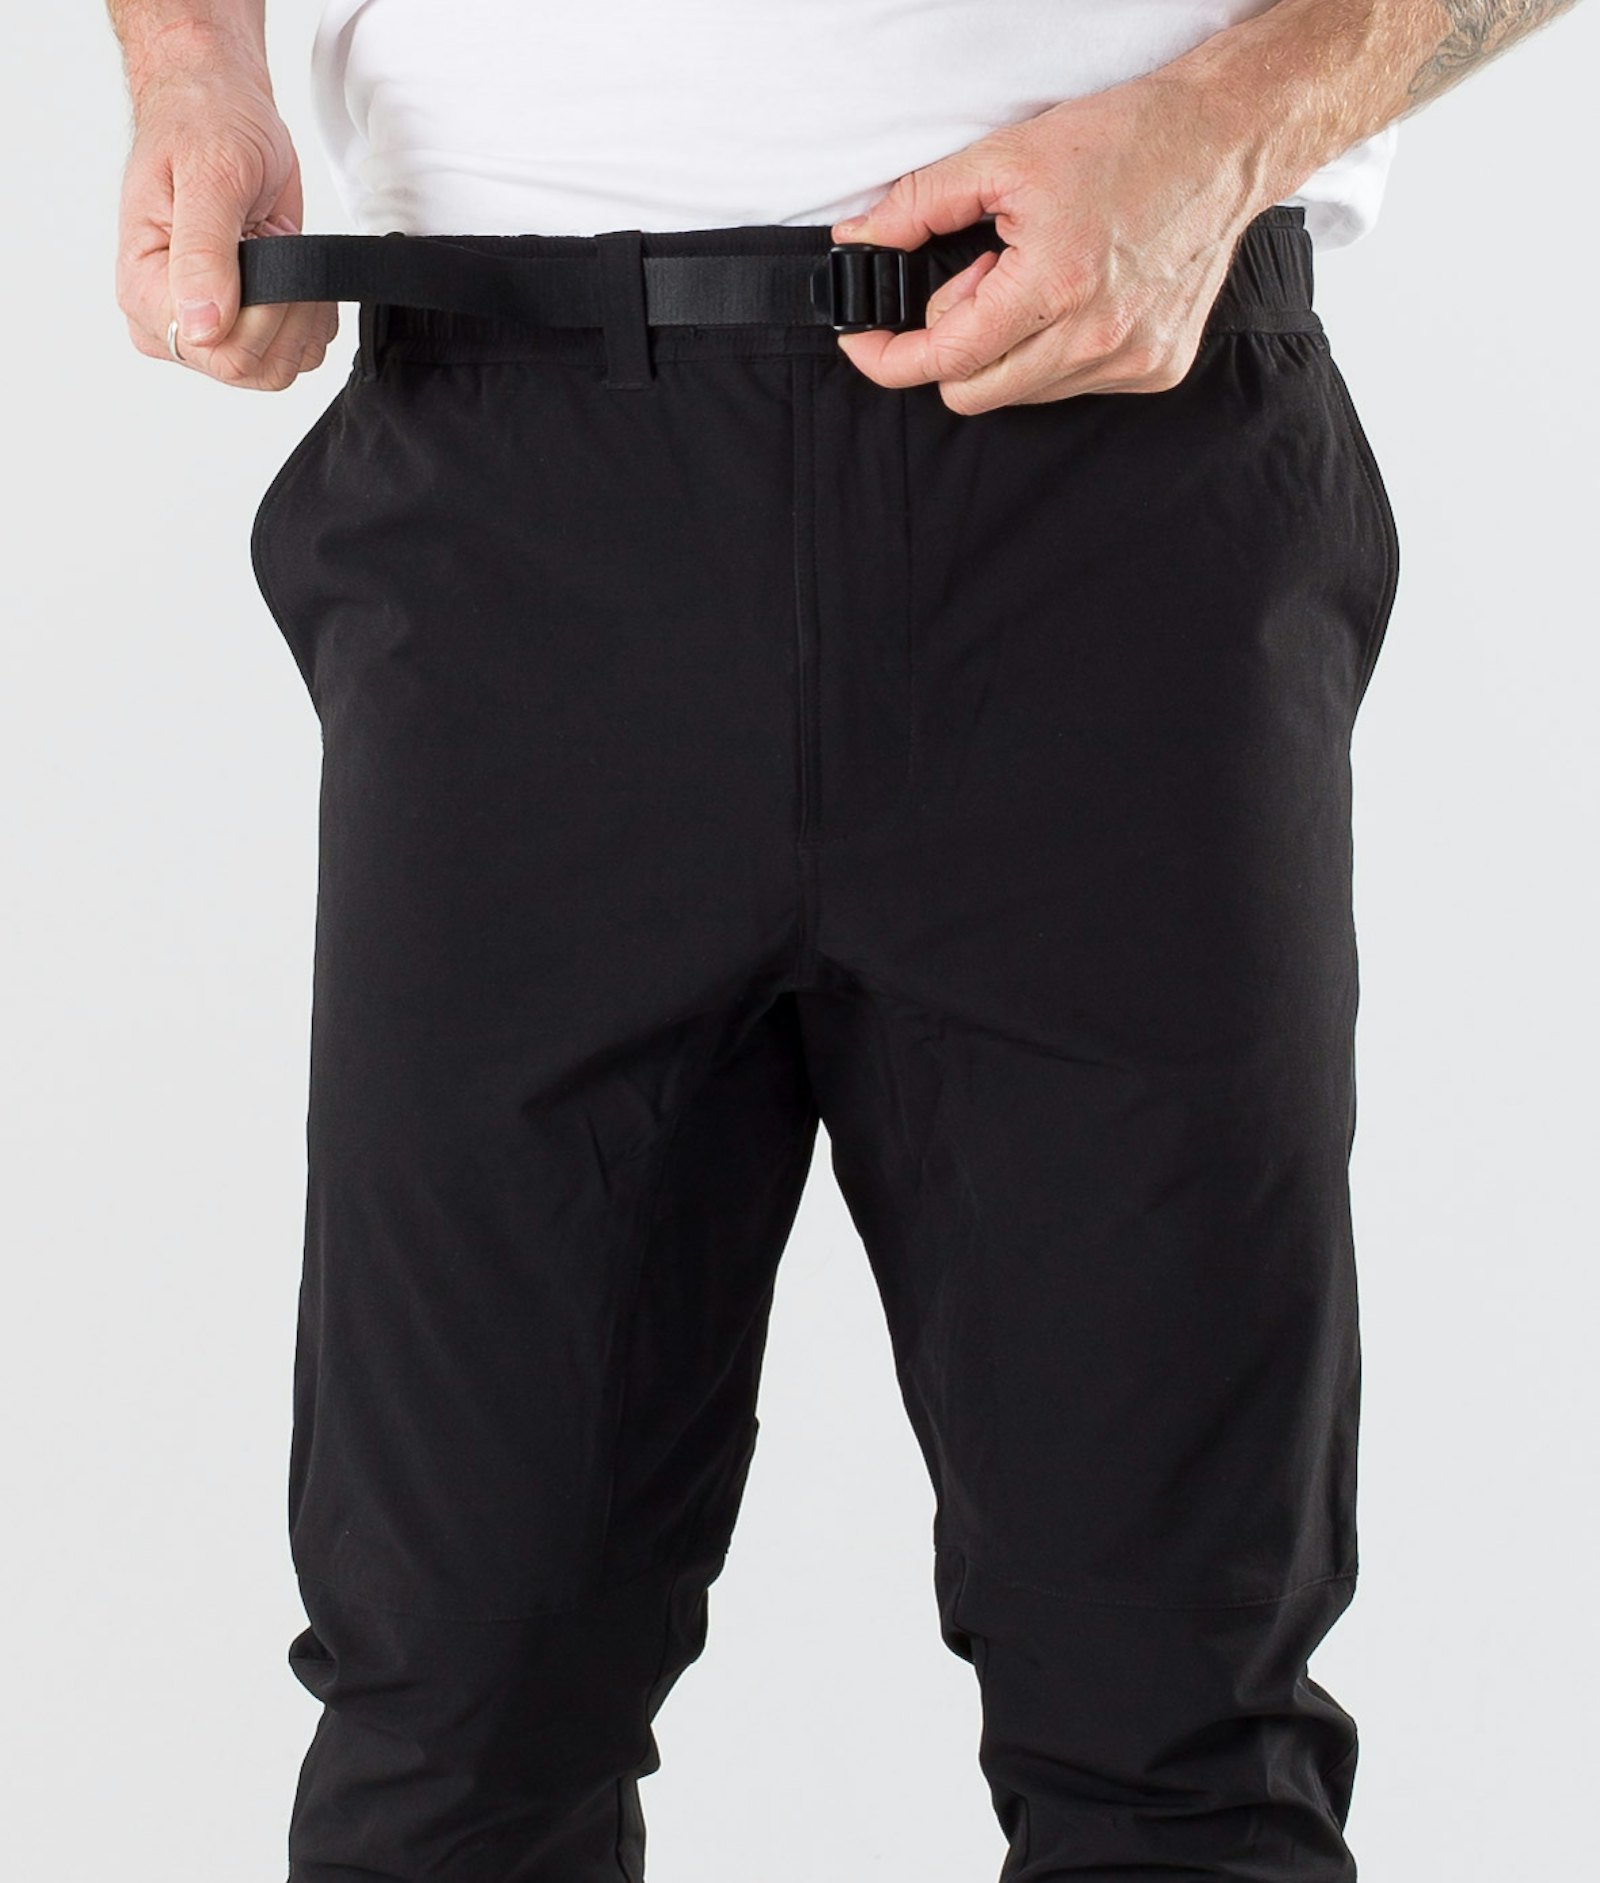 Dope Rover Tech 2020 Pantalon Randonnée Homme Black